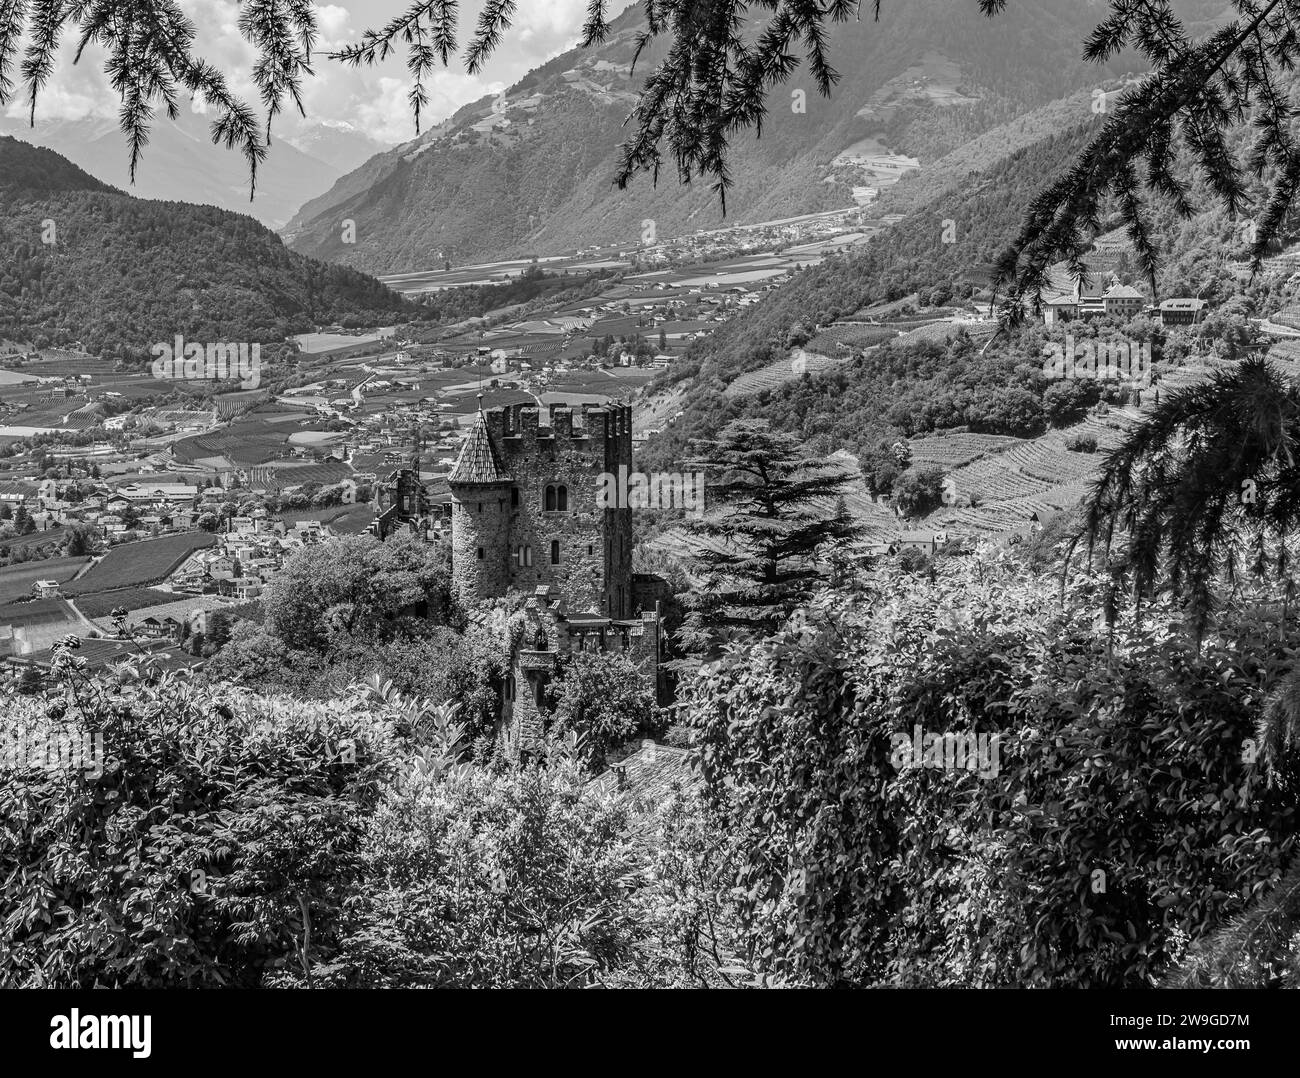 Le château de Fontana/Brunnenburg abrite le musée agricole et un mémorial au poète Ezra Pound. Tyrol/Tirolo, province de Bolzano, Alto-Adige, Italie Banque D'Images